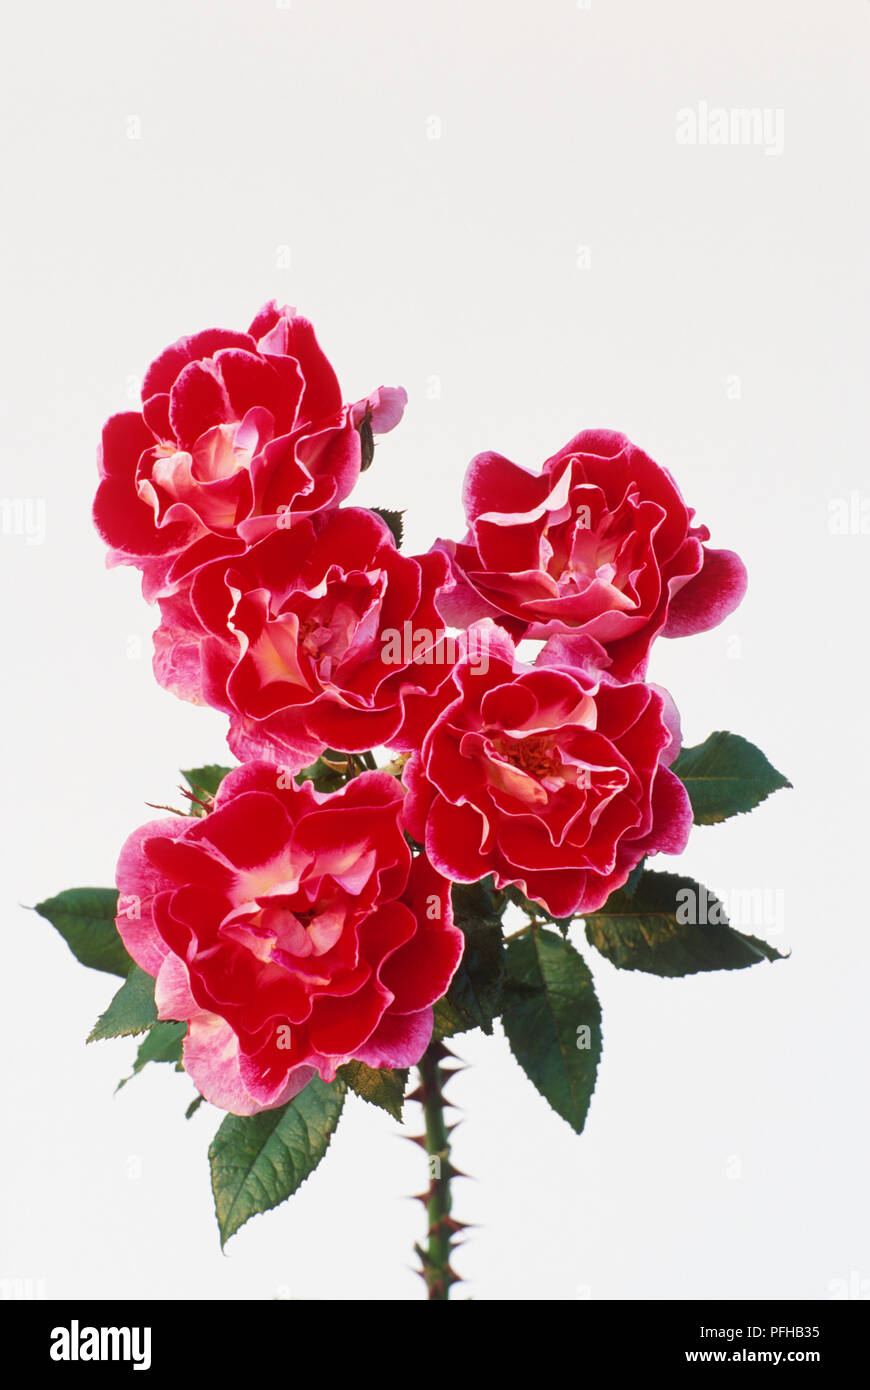 Rosa 'vieux', groupe de semi-double, fleurs en forme de coupe avec carmine-rouge pétales intérieurs, plus pâle pétales extérieurs, et feuilles vert foncé Banque D'Images